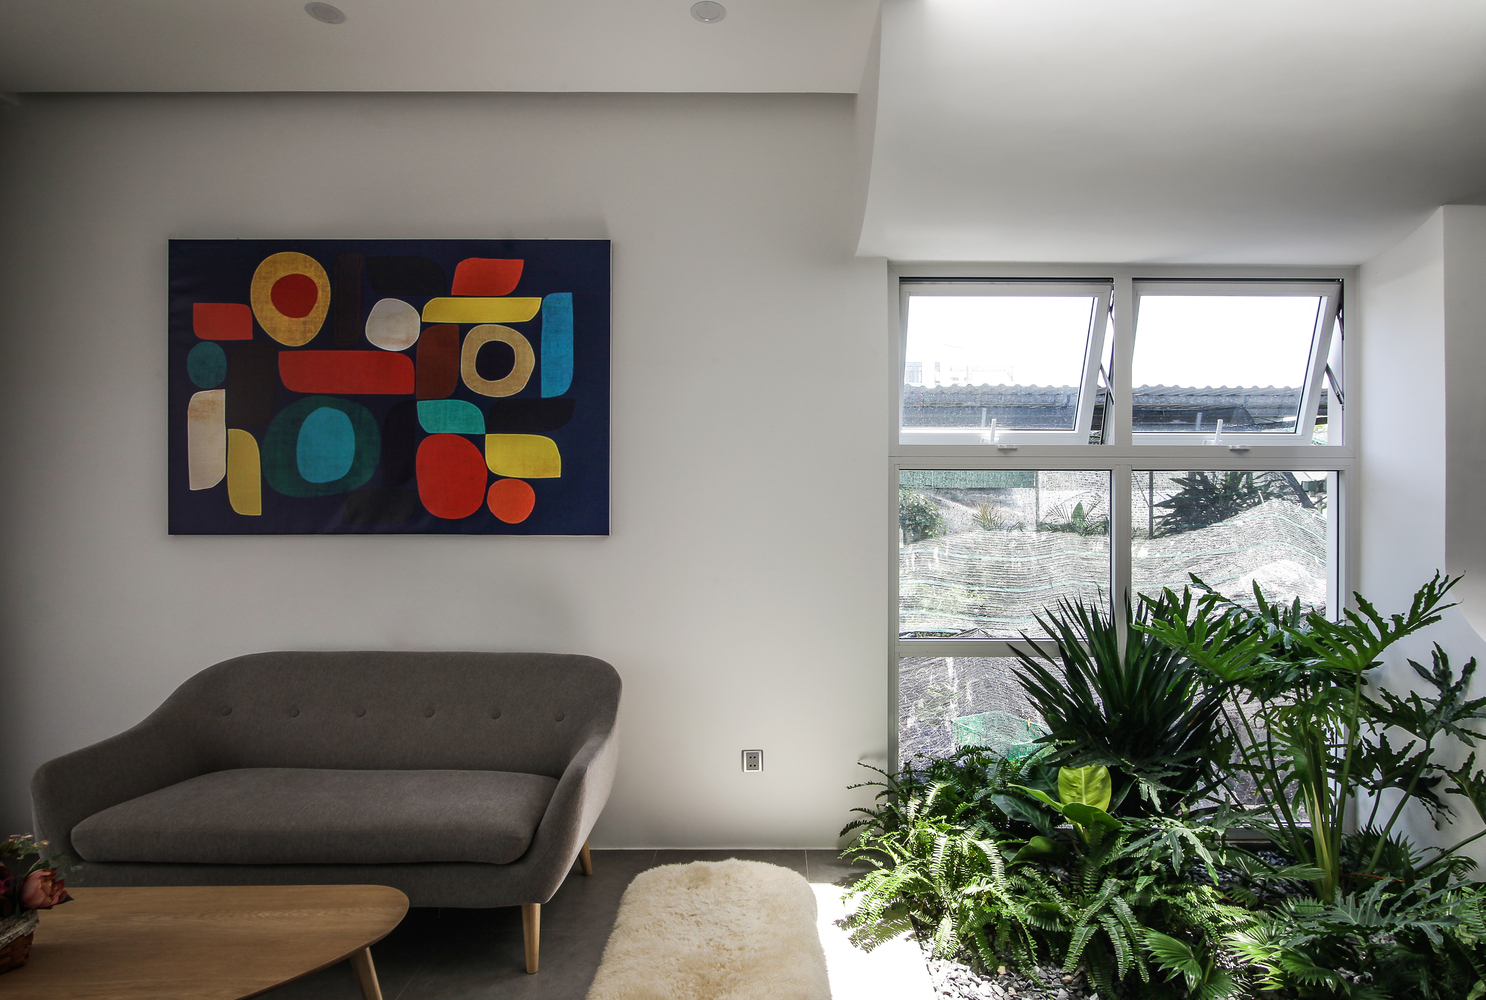 Không gian phòng khách nhẹ nhàng cùng ghế sofa và bàn nước thiết kế với đường cong mềm mại, trên tường là bức tranh trừu tượng làm điểm nhấn về màu sắc.